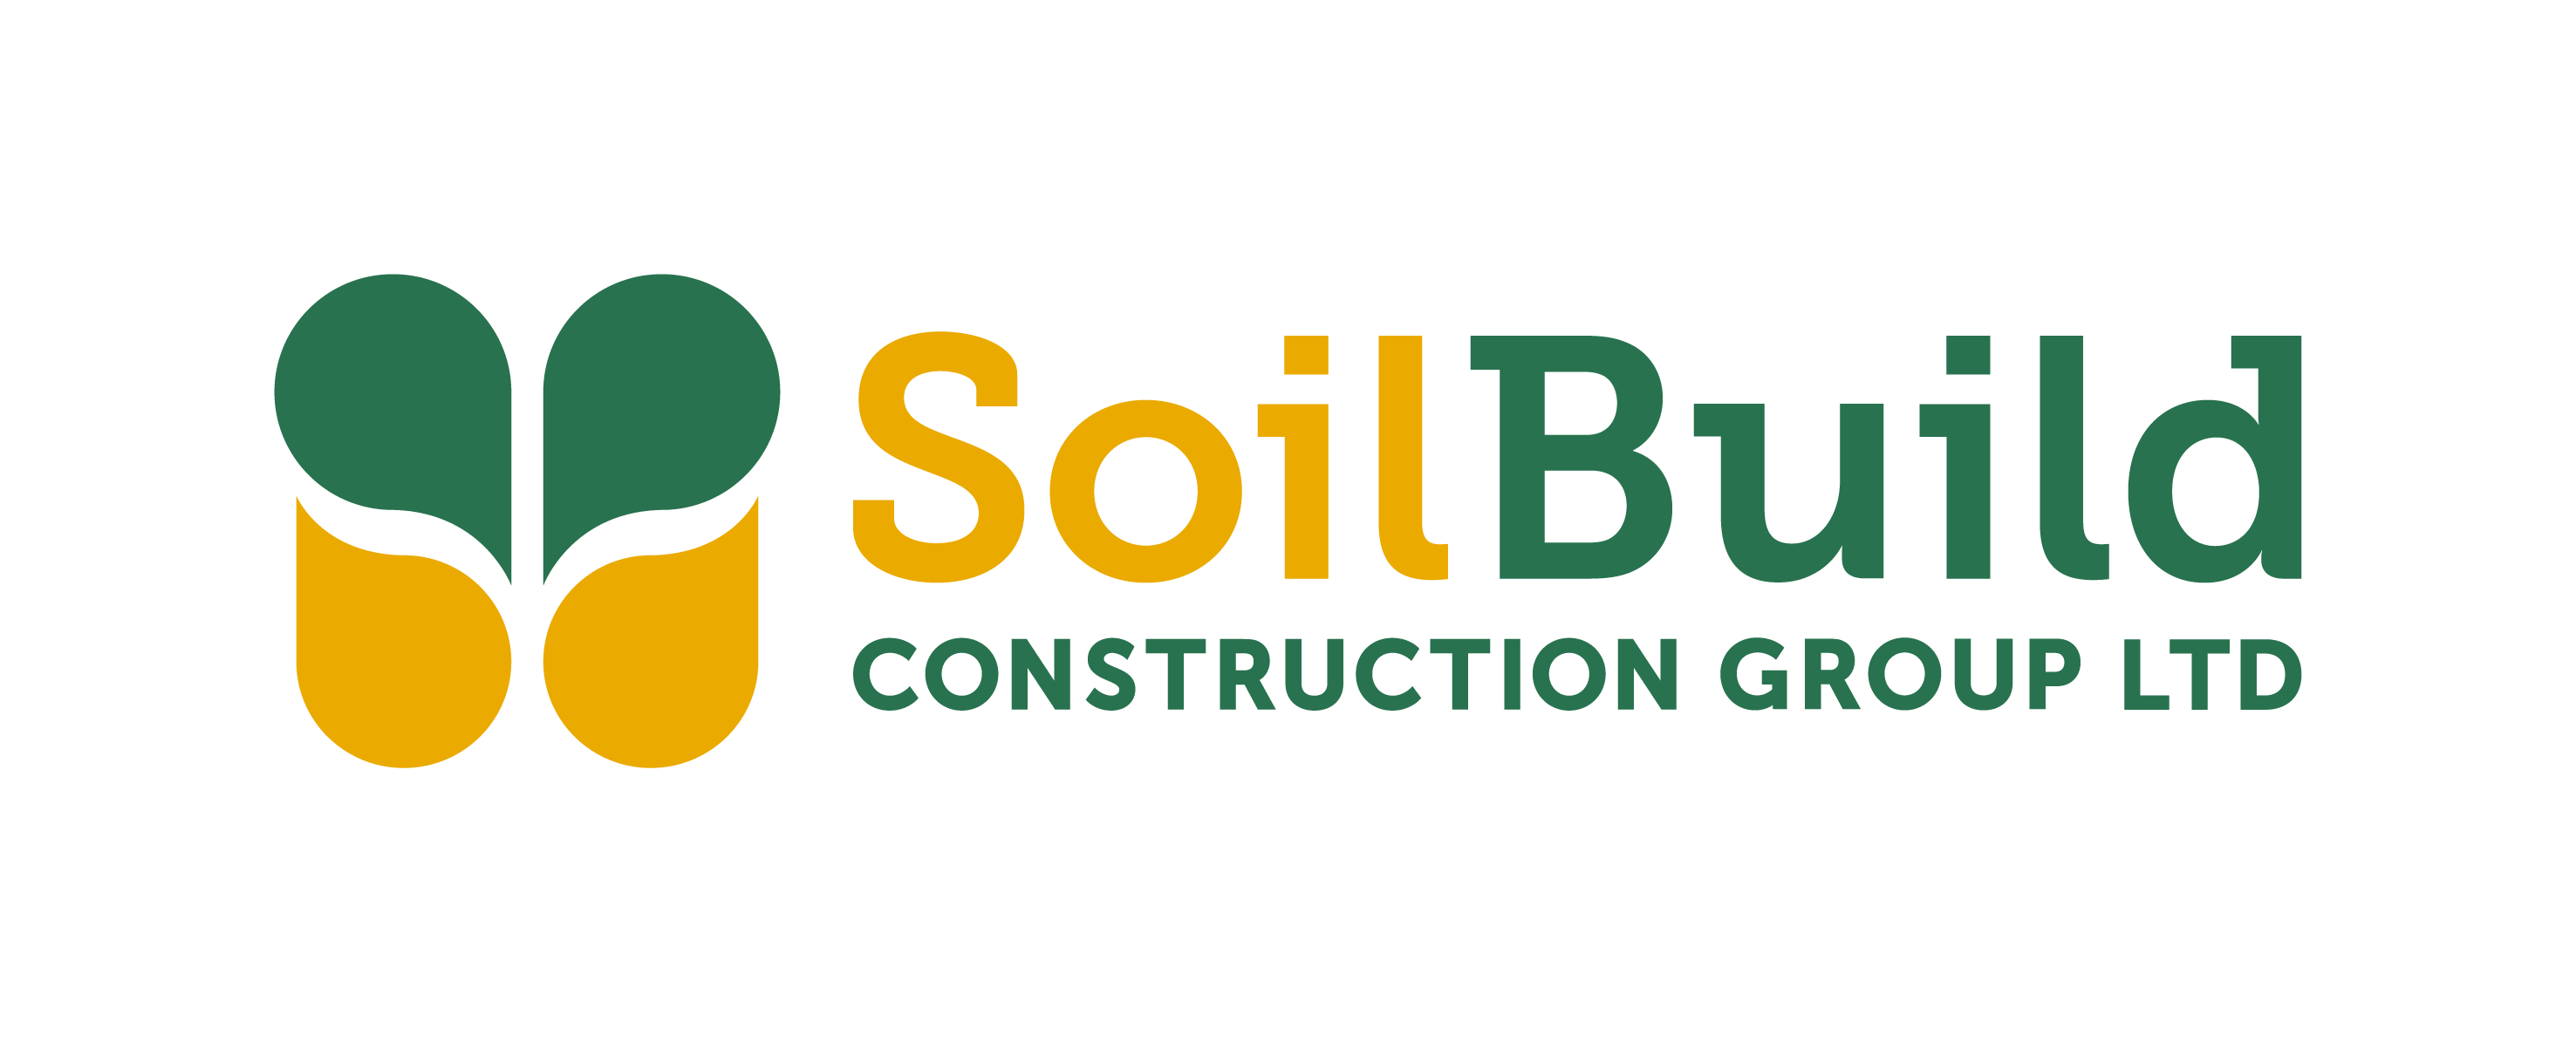 Soil-build (pte.) Ltd. logo